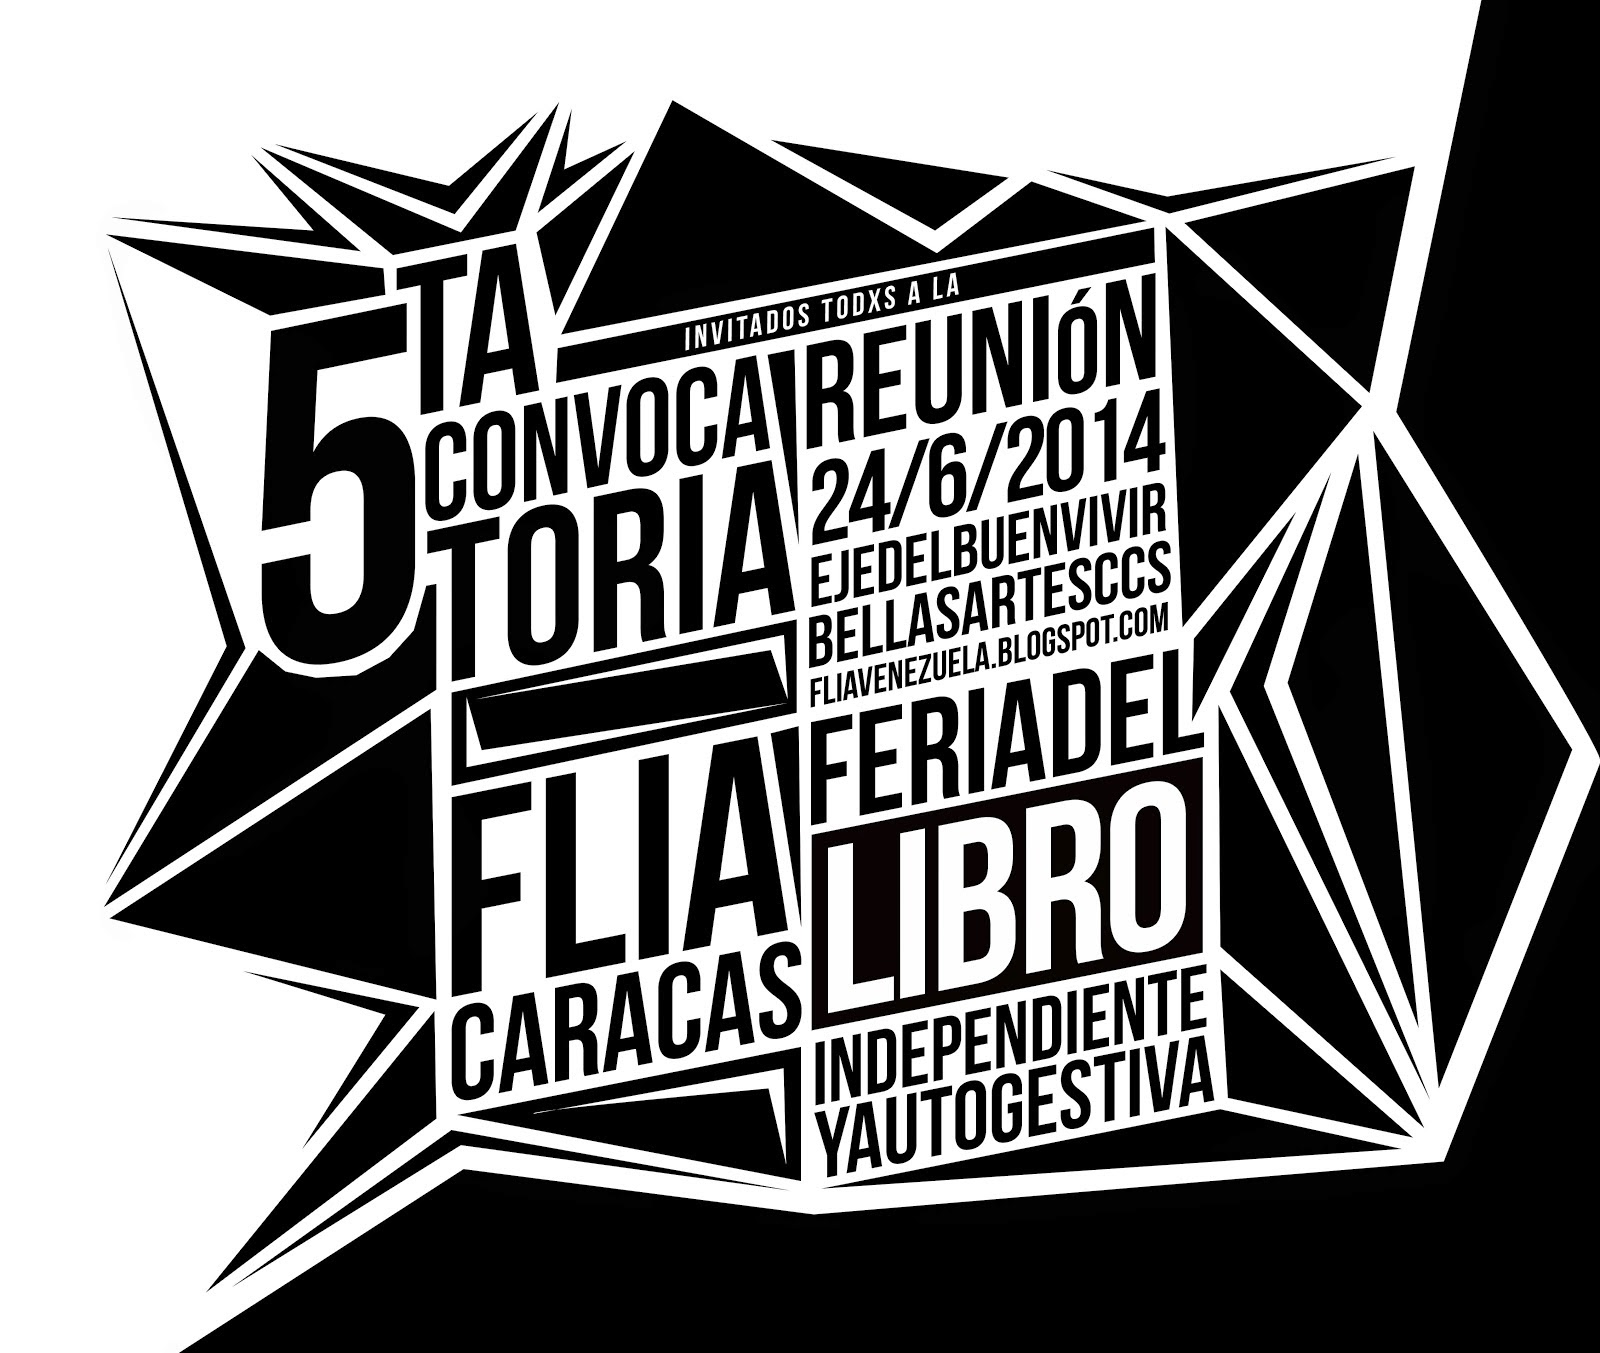 http://fliavenezuela.blogspot.com/2014/06/5ta-convocatoria-para-flia-caracas-2014.html